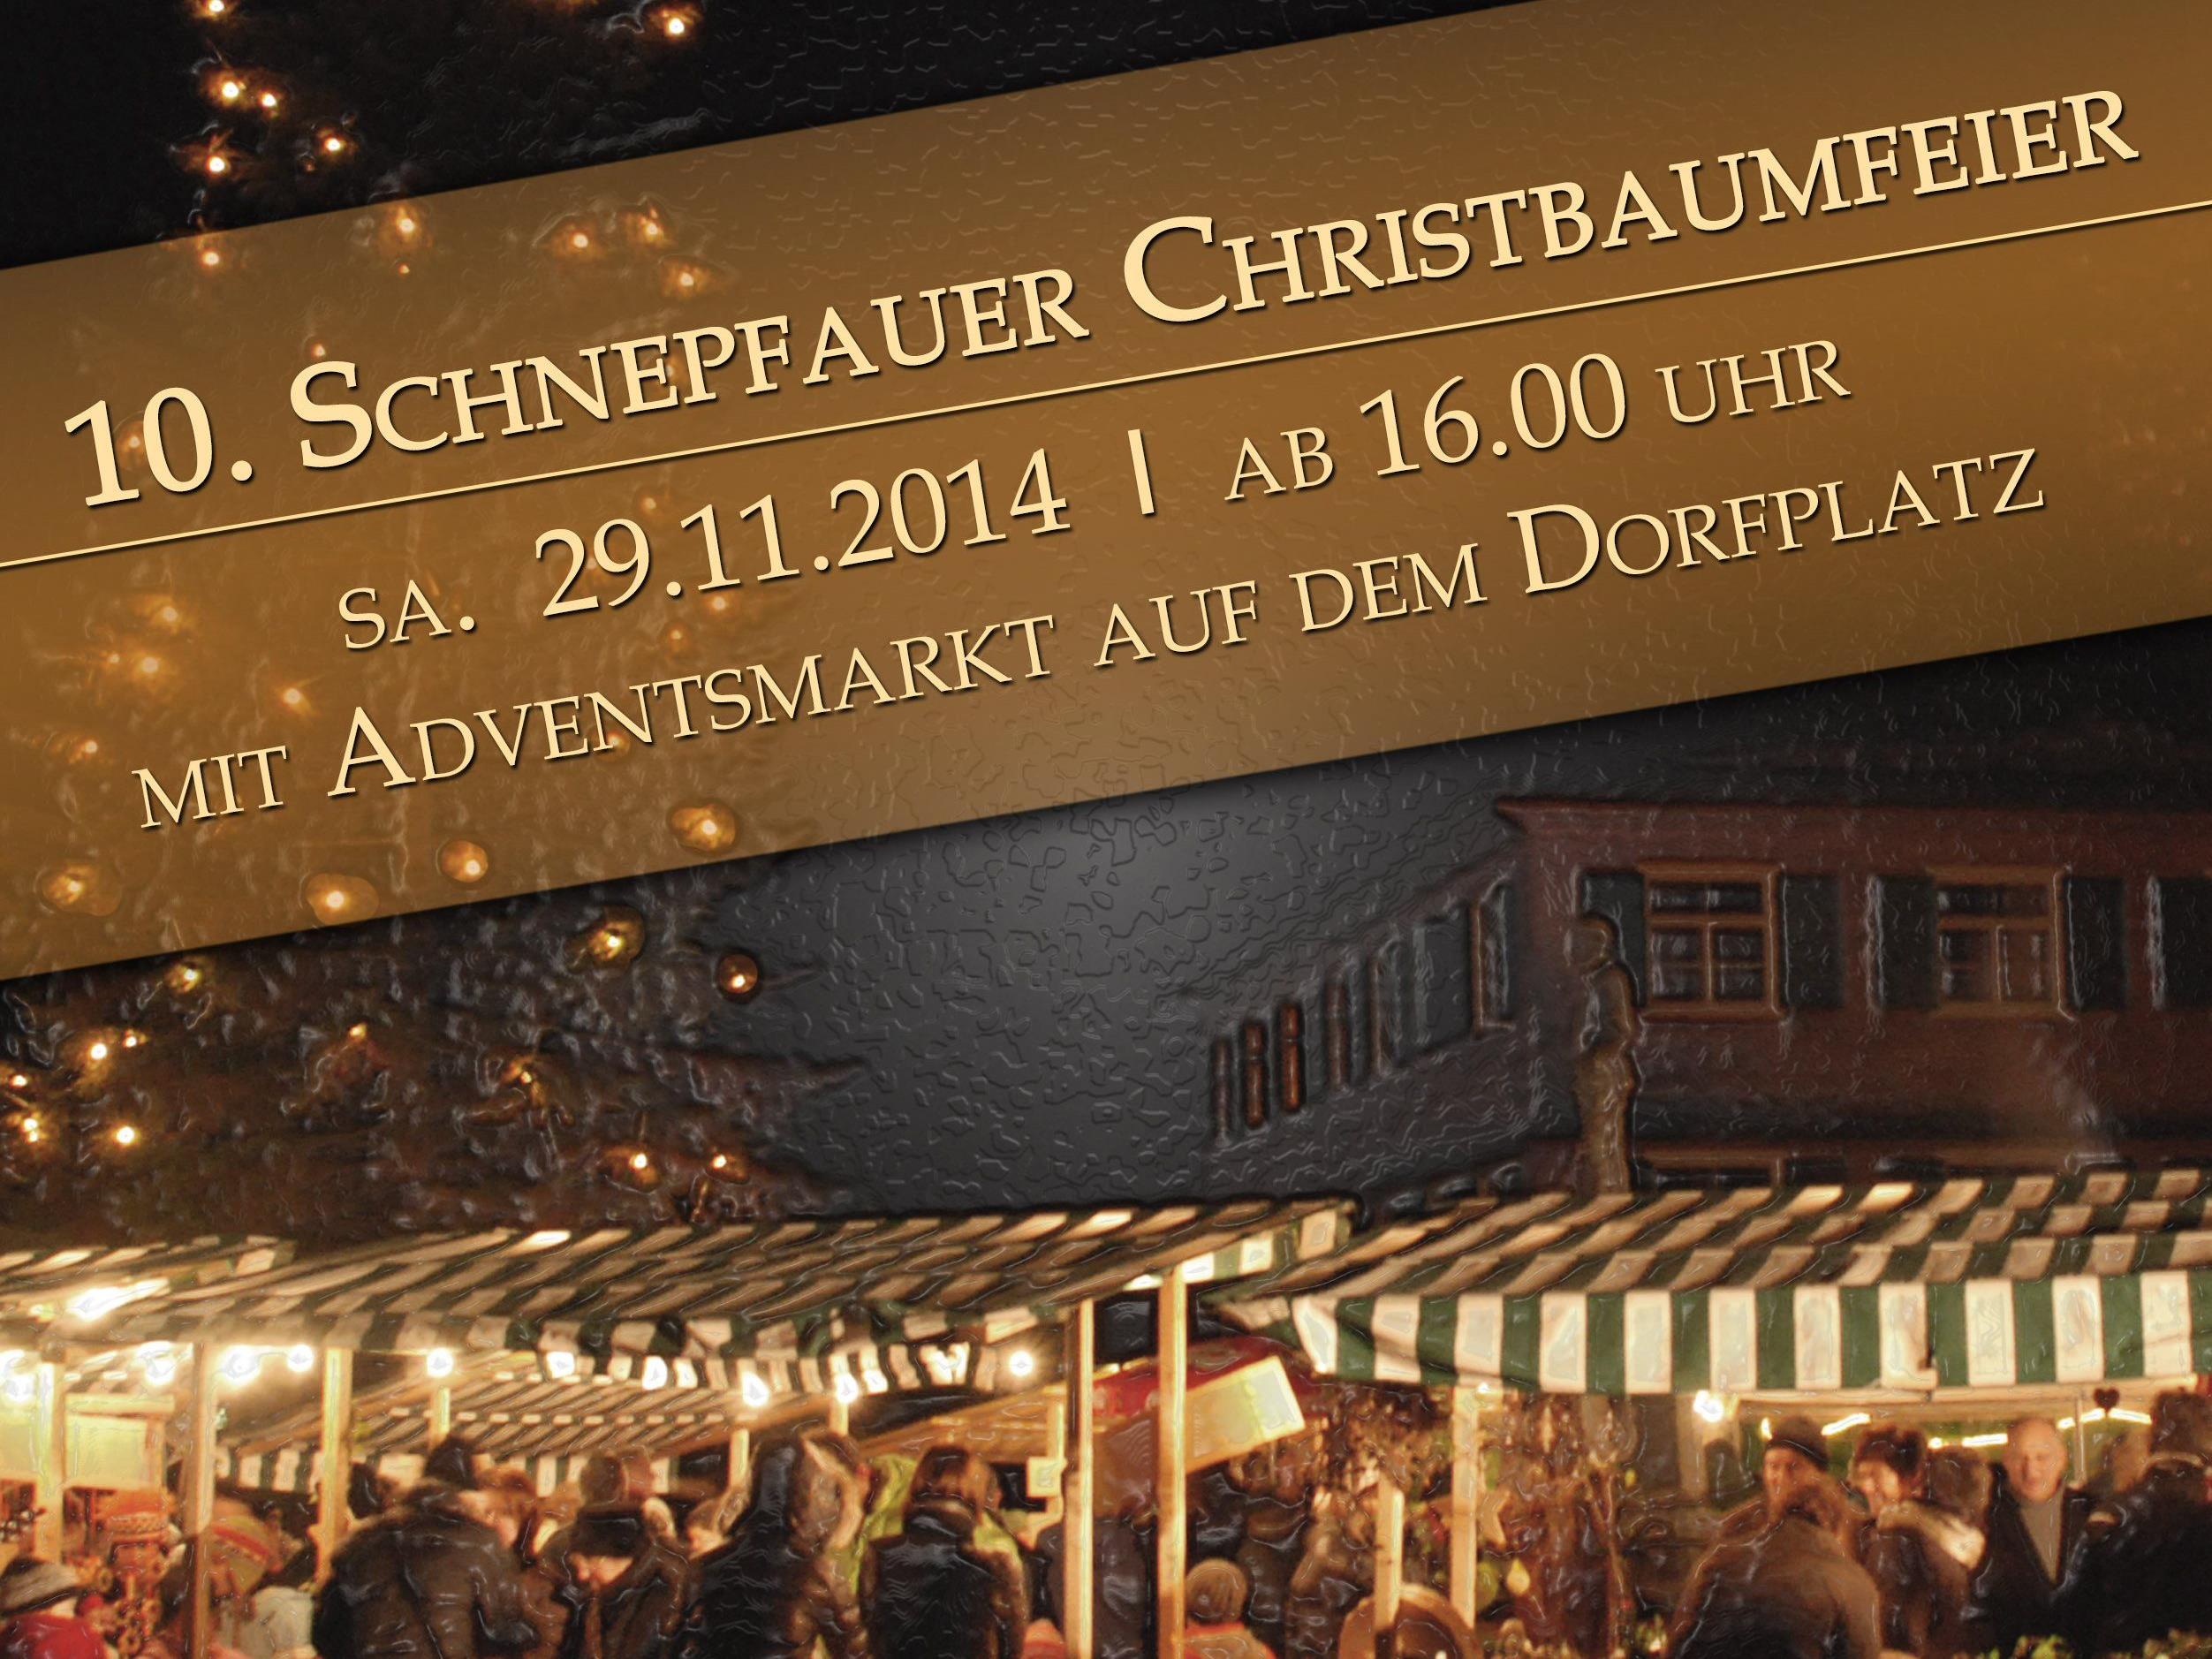 10. Schnepfauer Christbaumfeier mit Adventmarkt